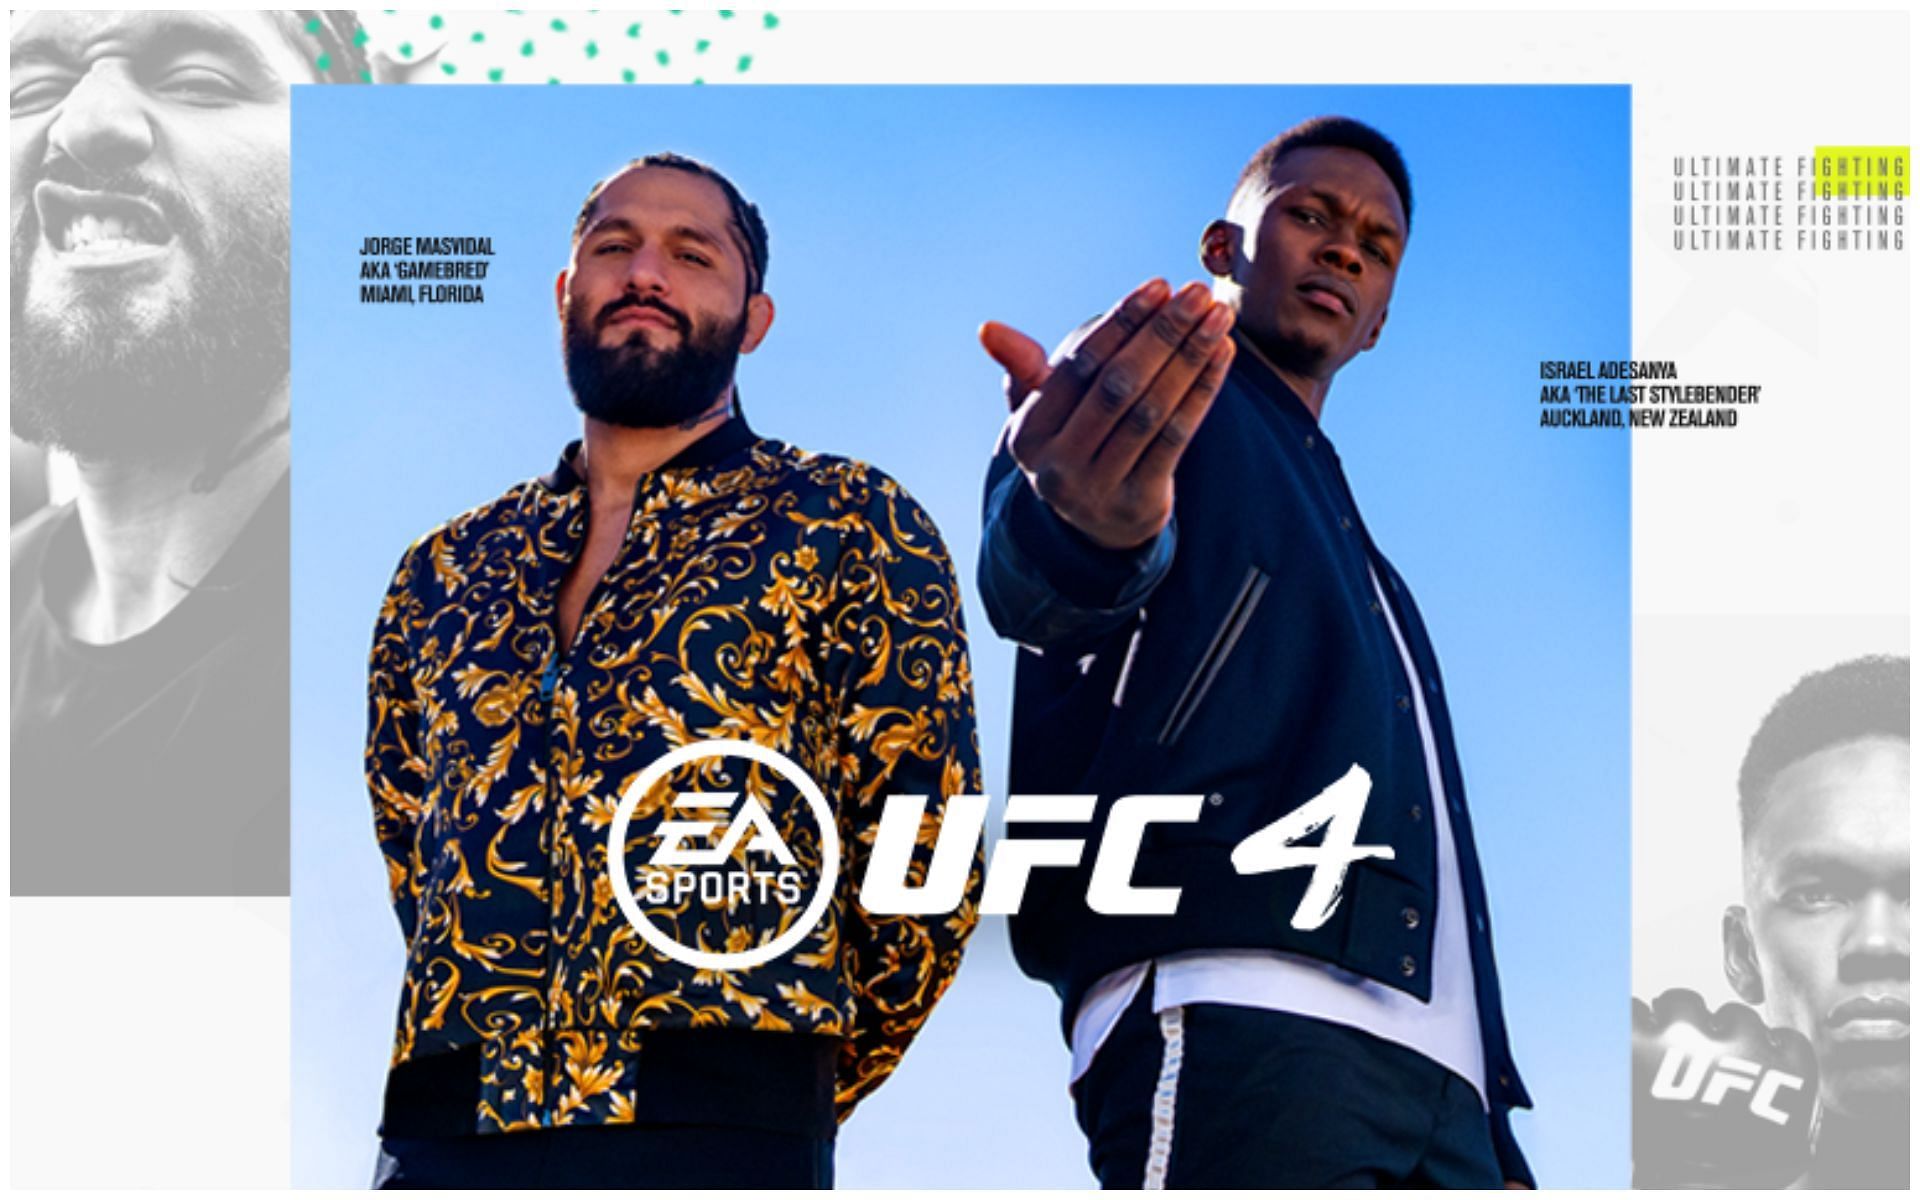 EA Sports UFC 4 cover photo